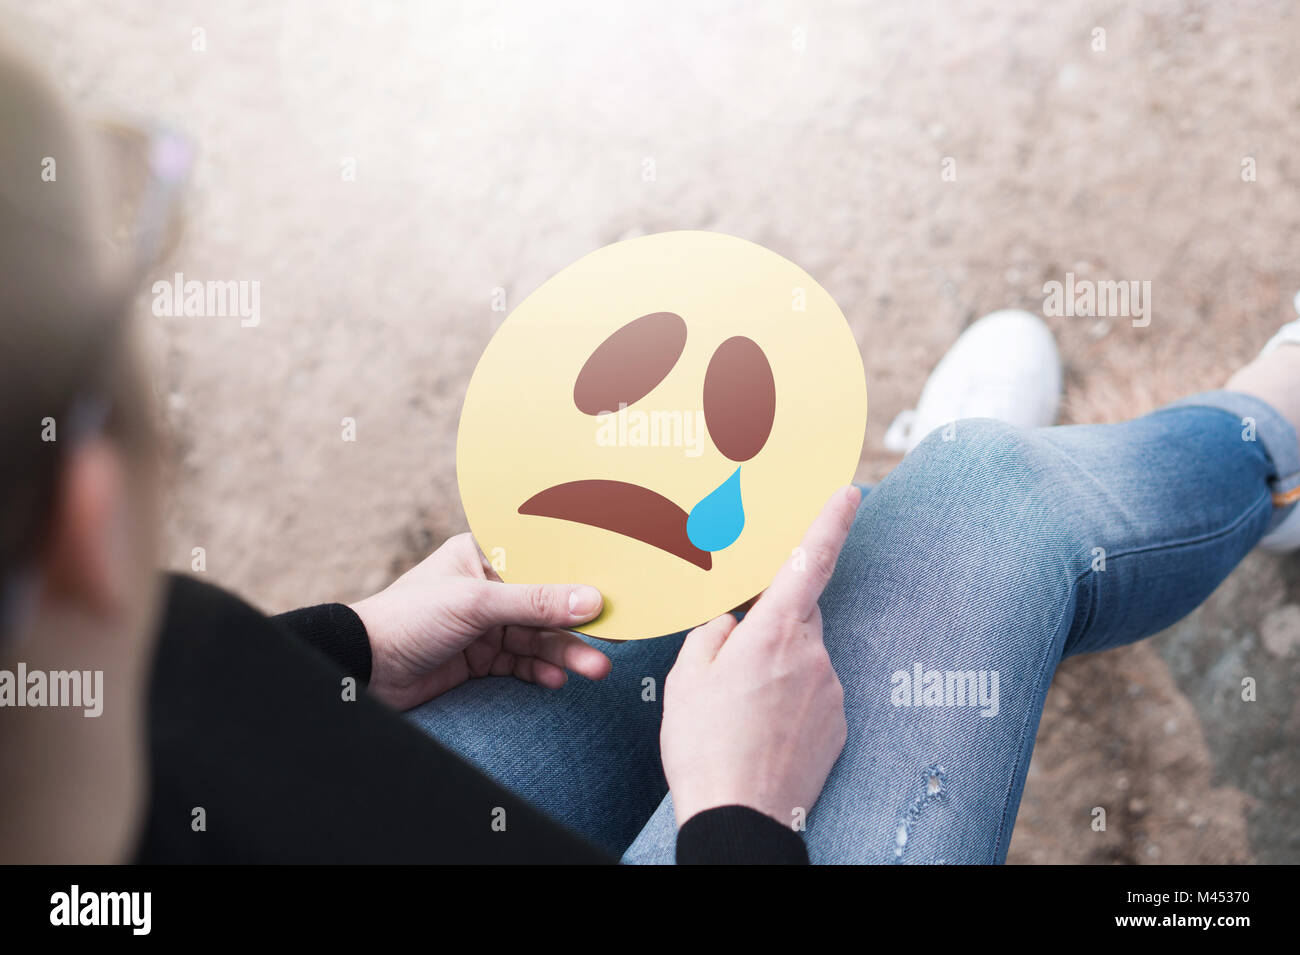 Weinend Papier emoticon in der Hand. Deprimiert Frau mit gedruckten traurige smiley Gesicht und sitzt auf einem Felsen. Moderne Kommunikations- und Smiley. Stockfoto